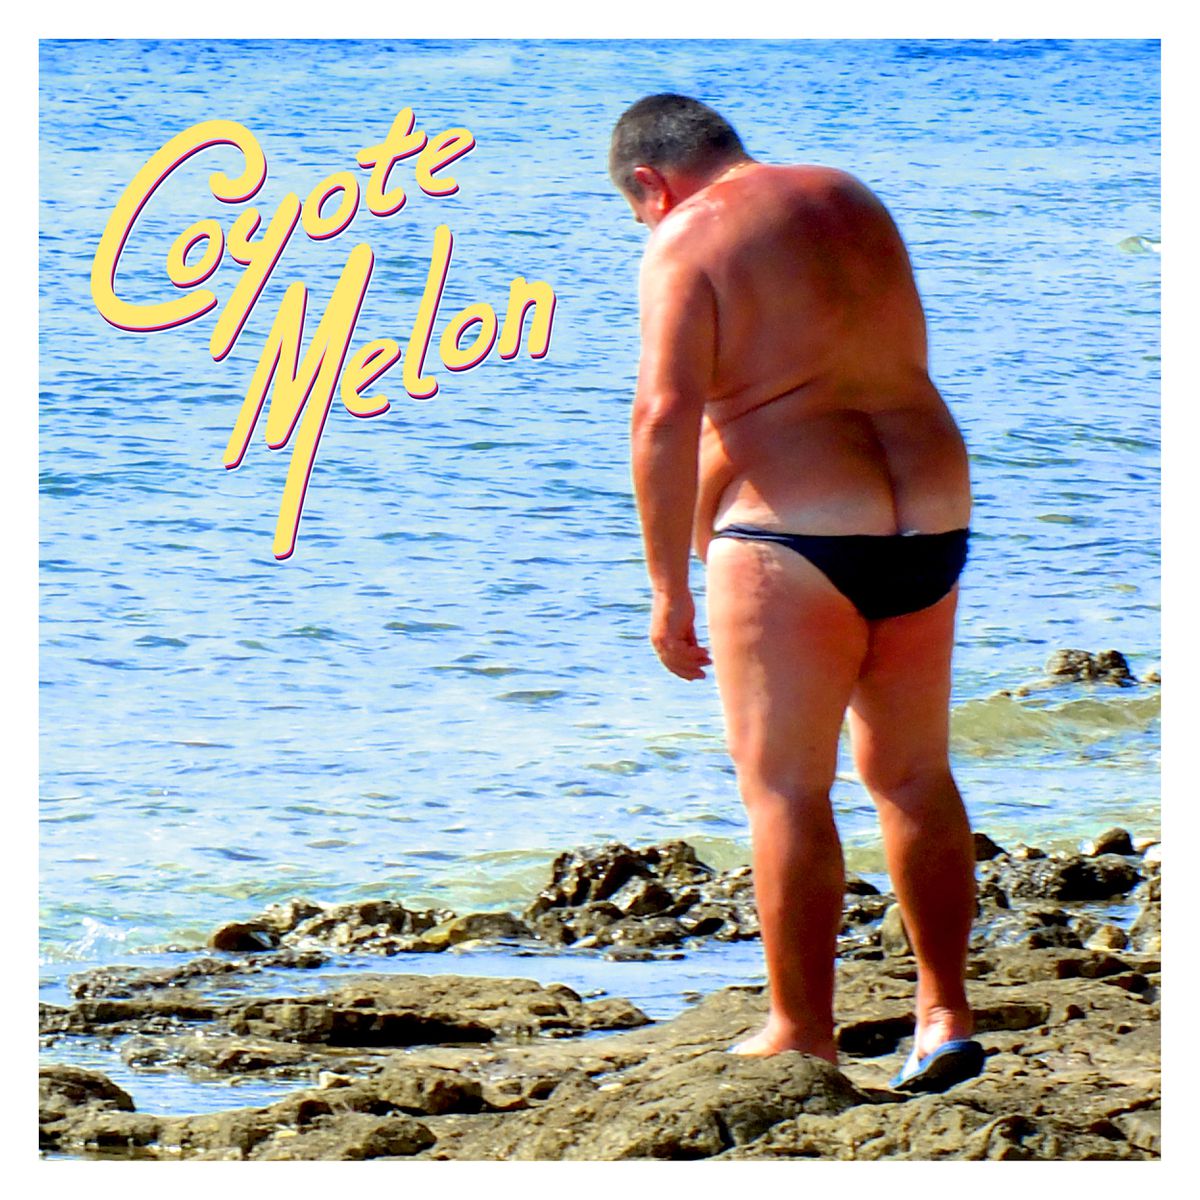 Coyote Melon - Casablanca